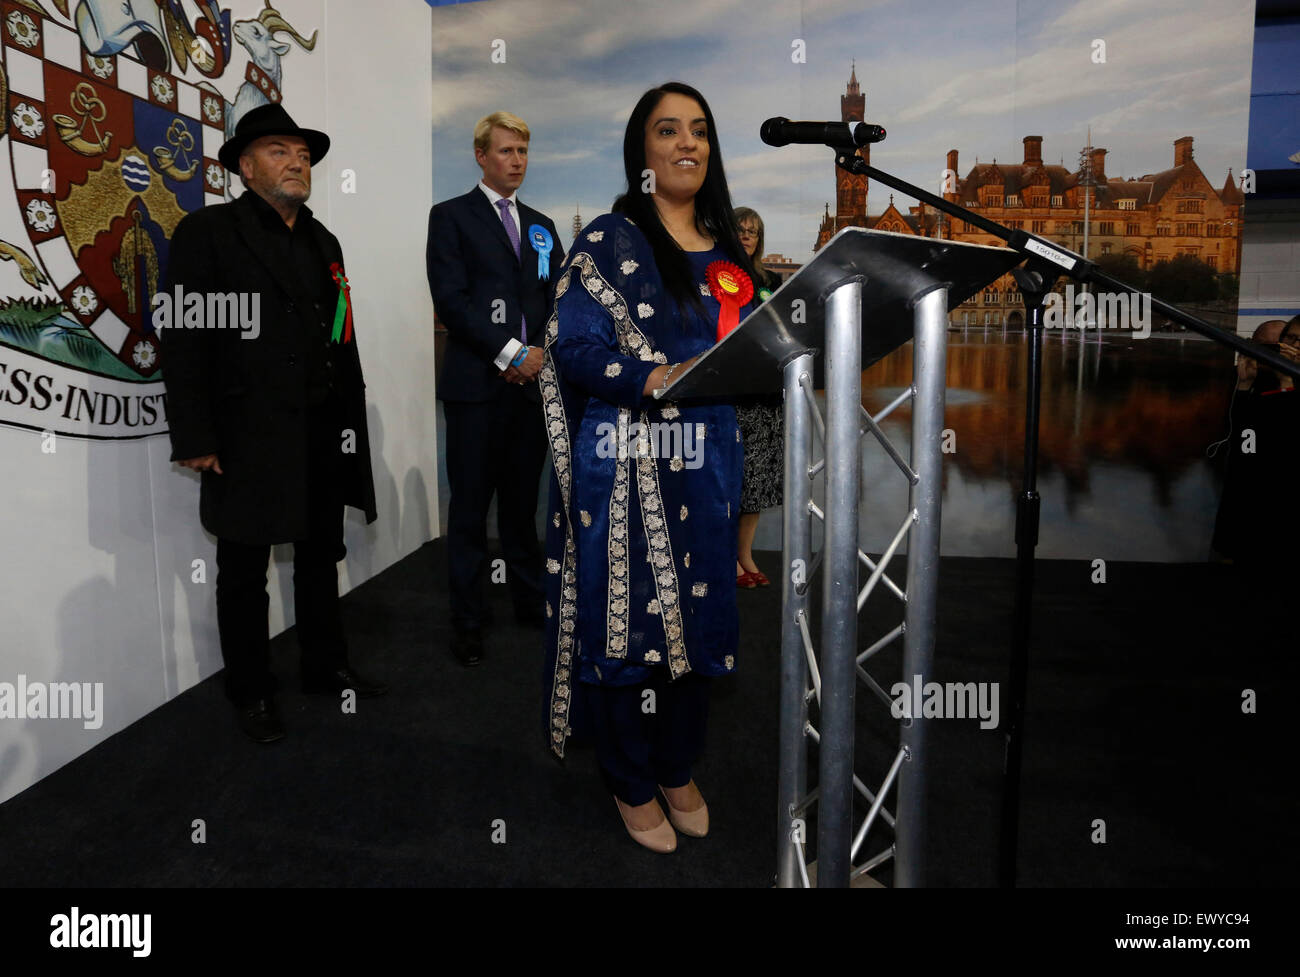 Candidat du travail rend sa victoire Shah Naz discours dans lequel elle condamne la tactique de l'ex-Bradford West MP George Galloway Banque D'Images